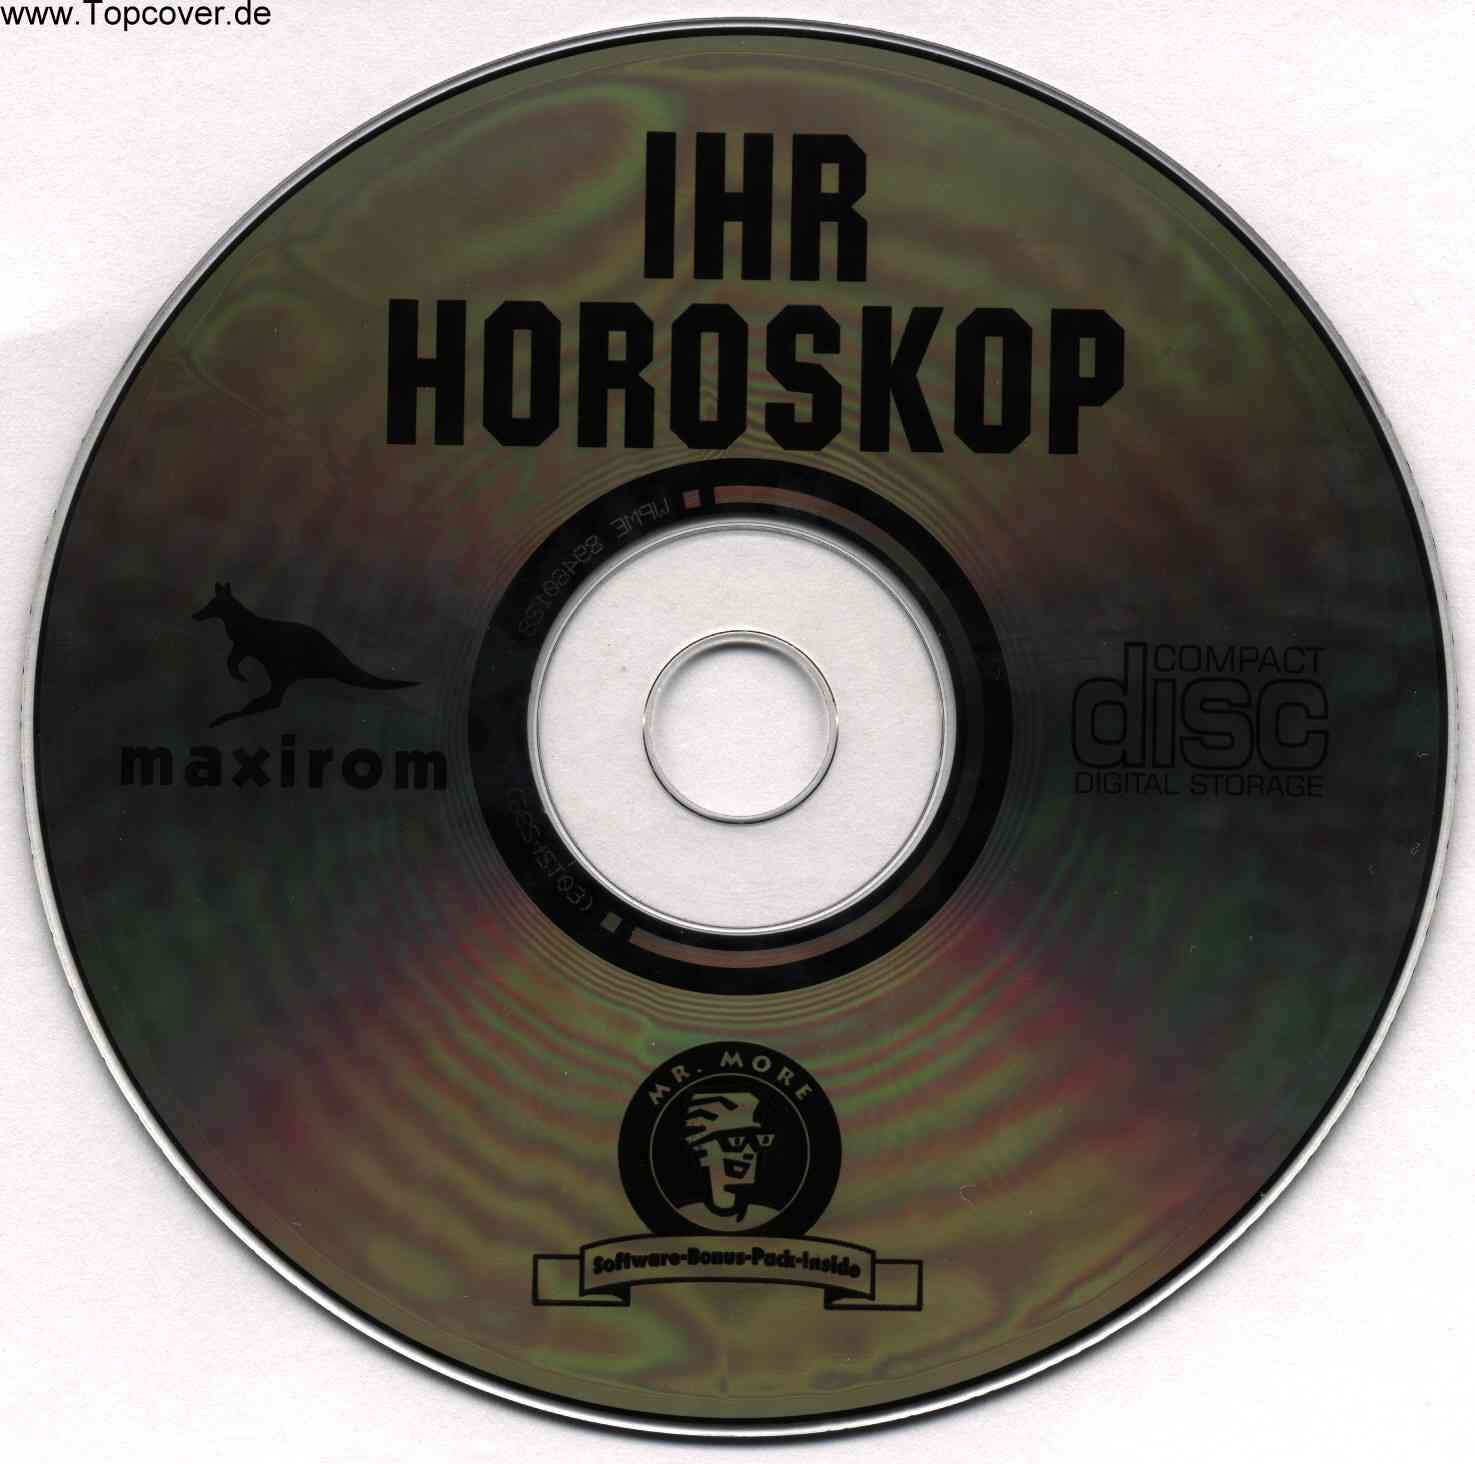 IhrHoroskop CD